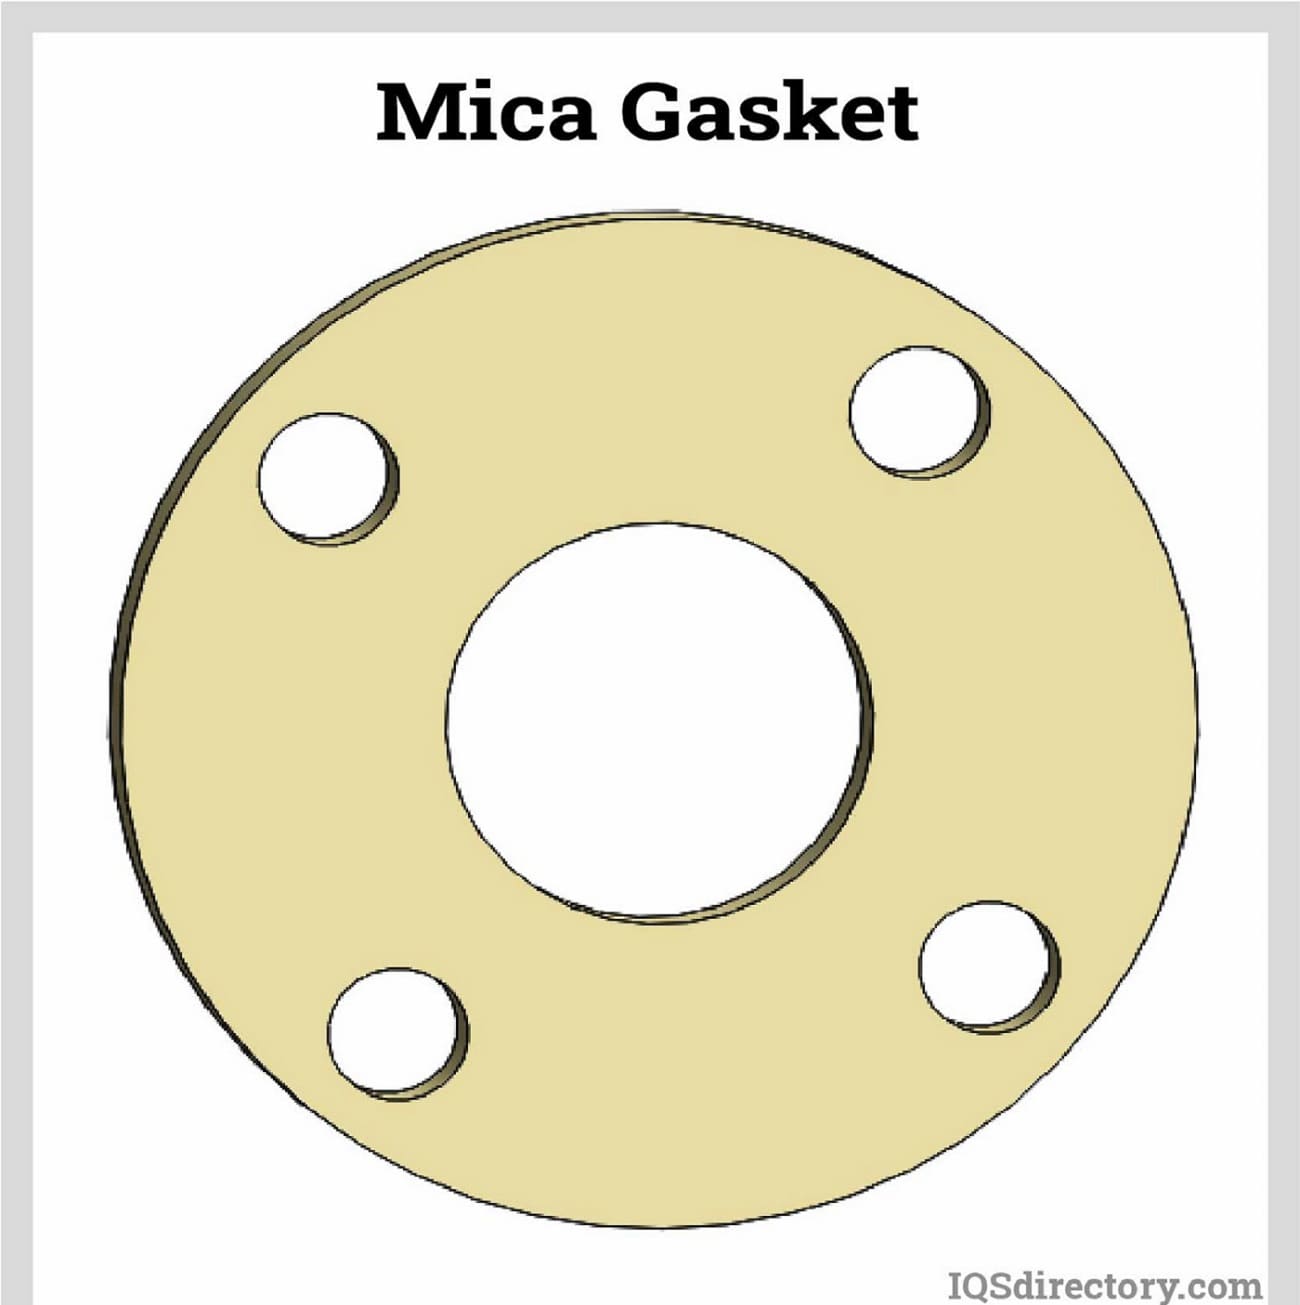 Mica Gasket